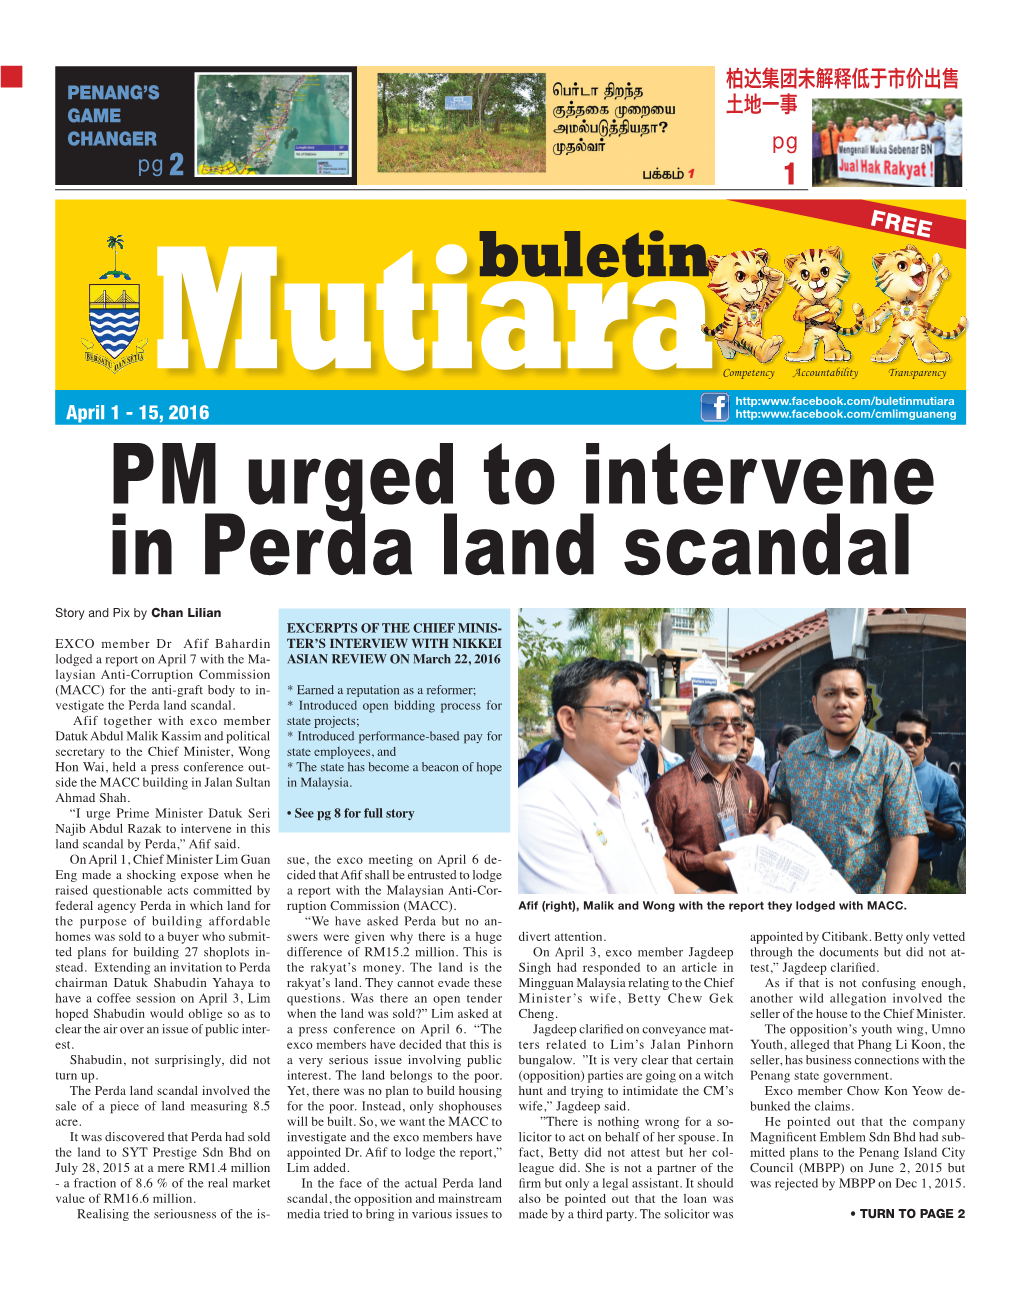 PM Urged to Intervene in Perda Land Scandal